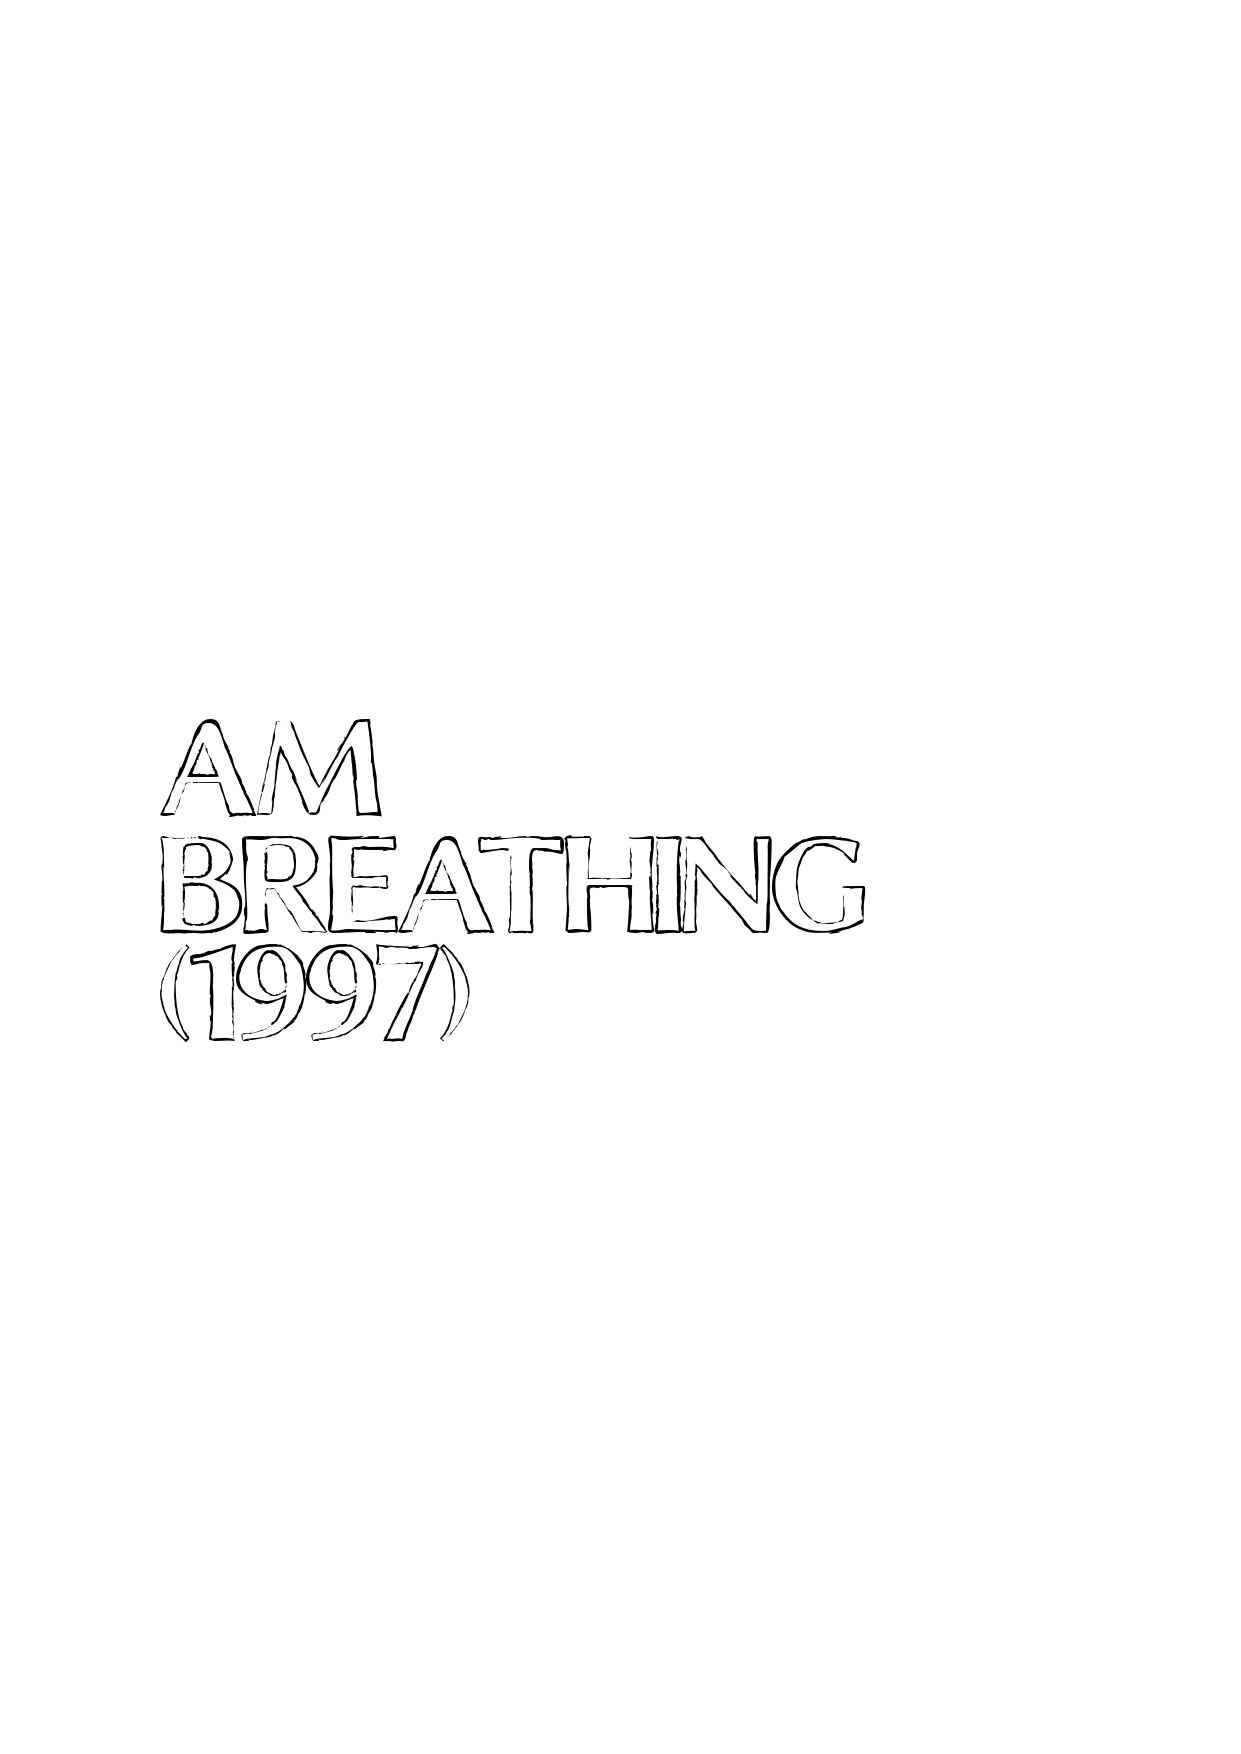 AM(breathing)1997